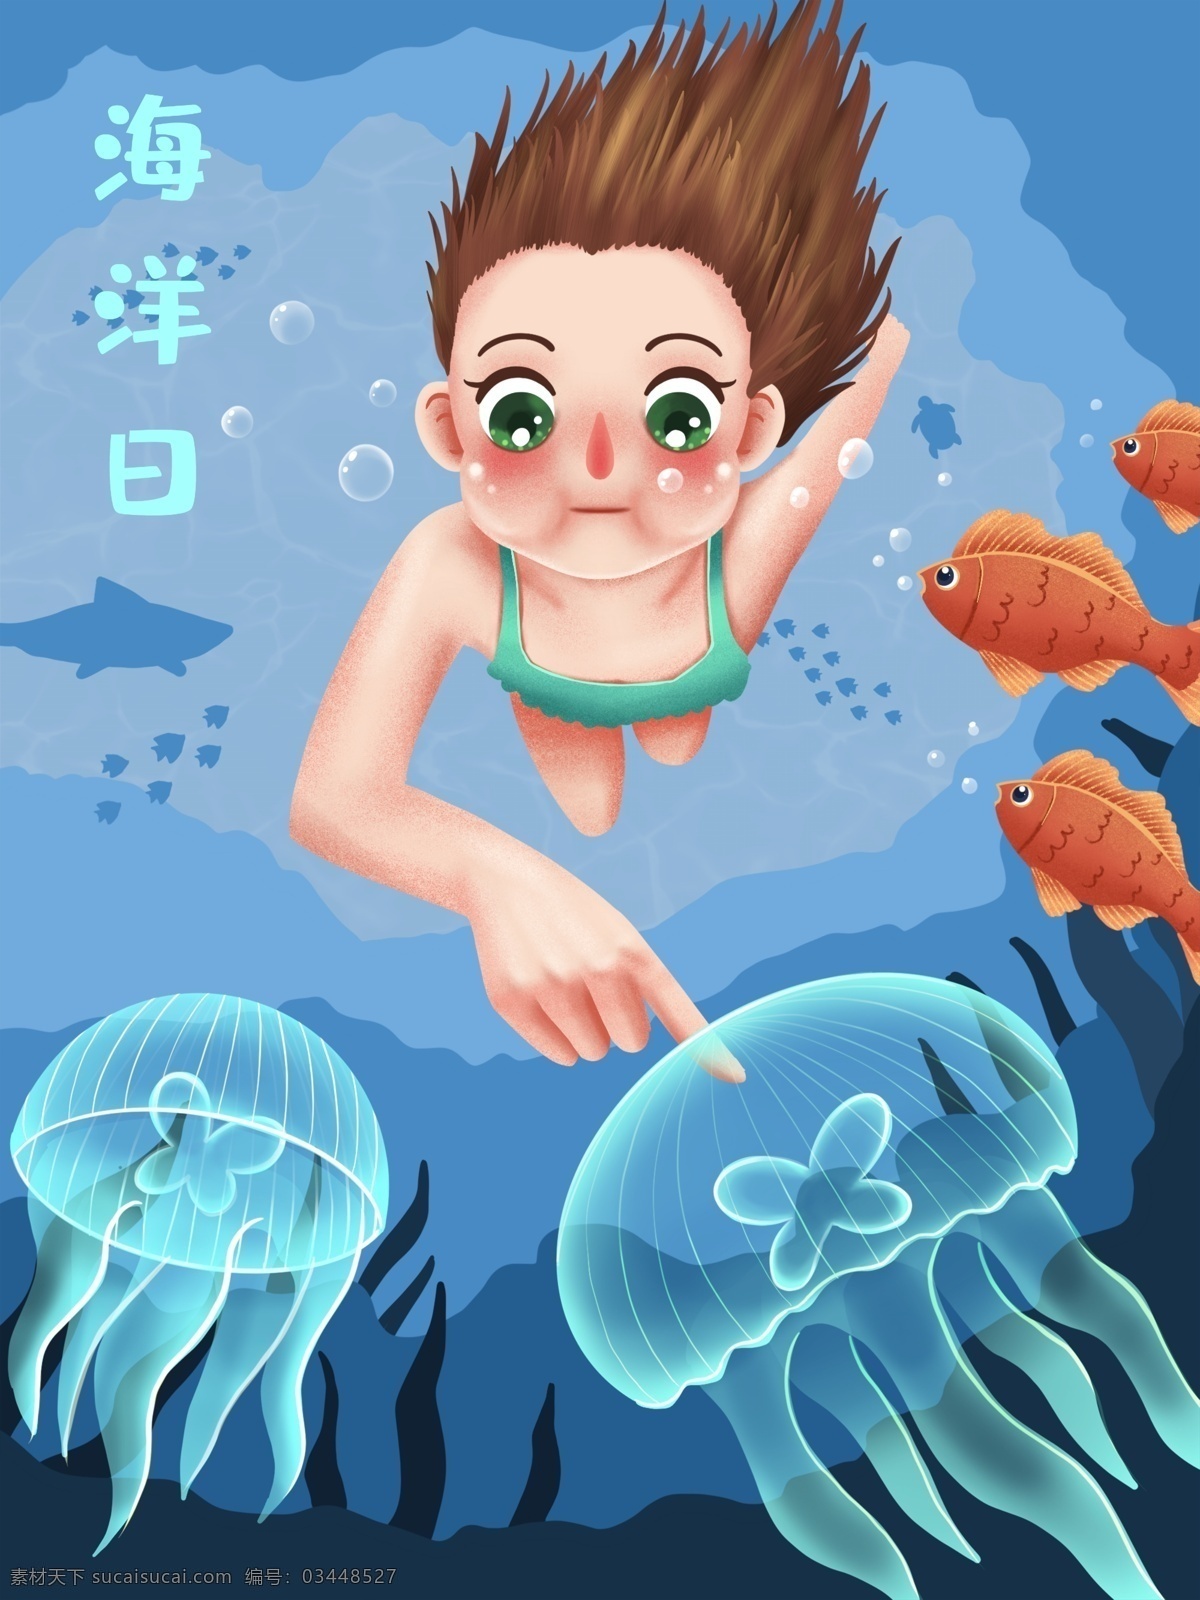 世界 海洋 日 女孩 深海 发现 水母 原创 插画 世界海洋日 海洋日 大海 鱼群 海底 潜水 游泳